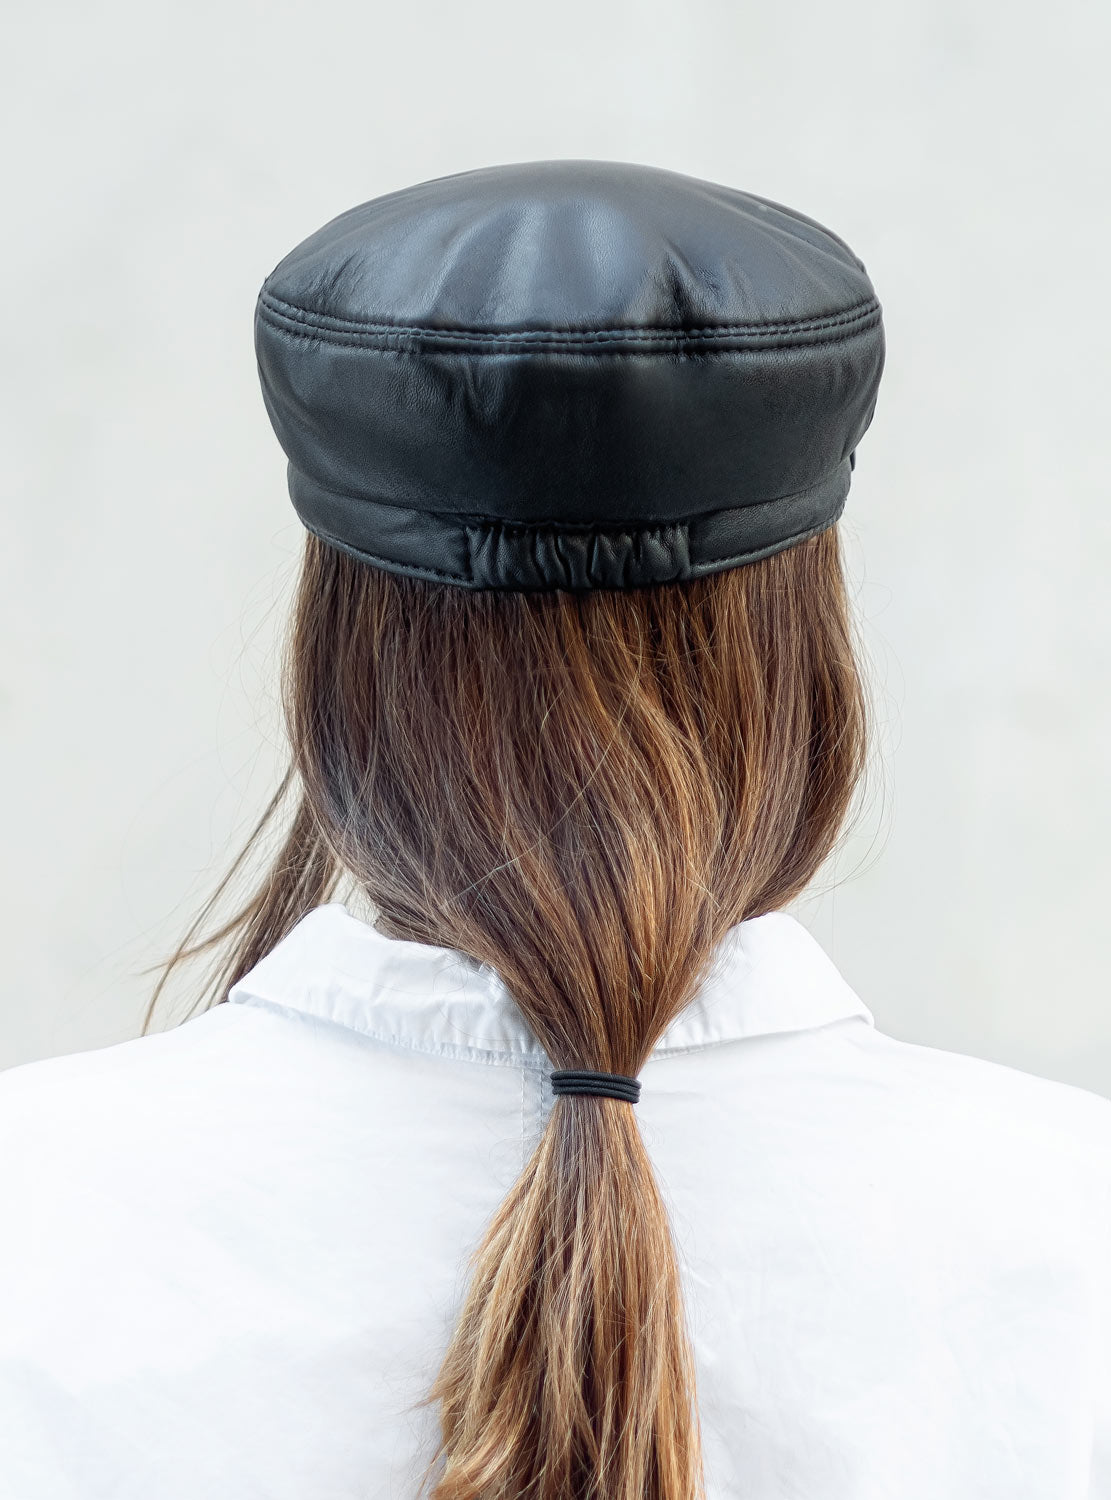 Classic leather cap